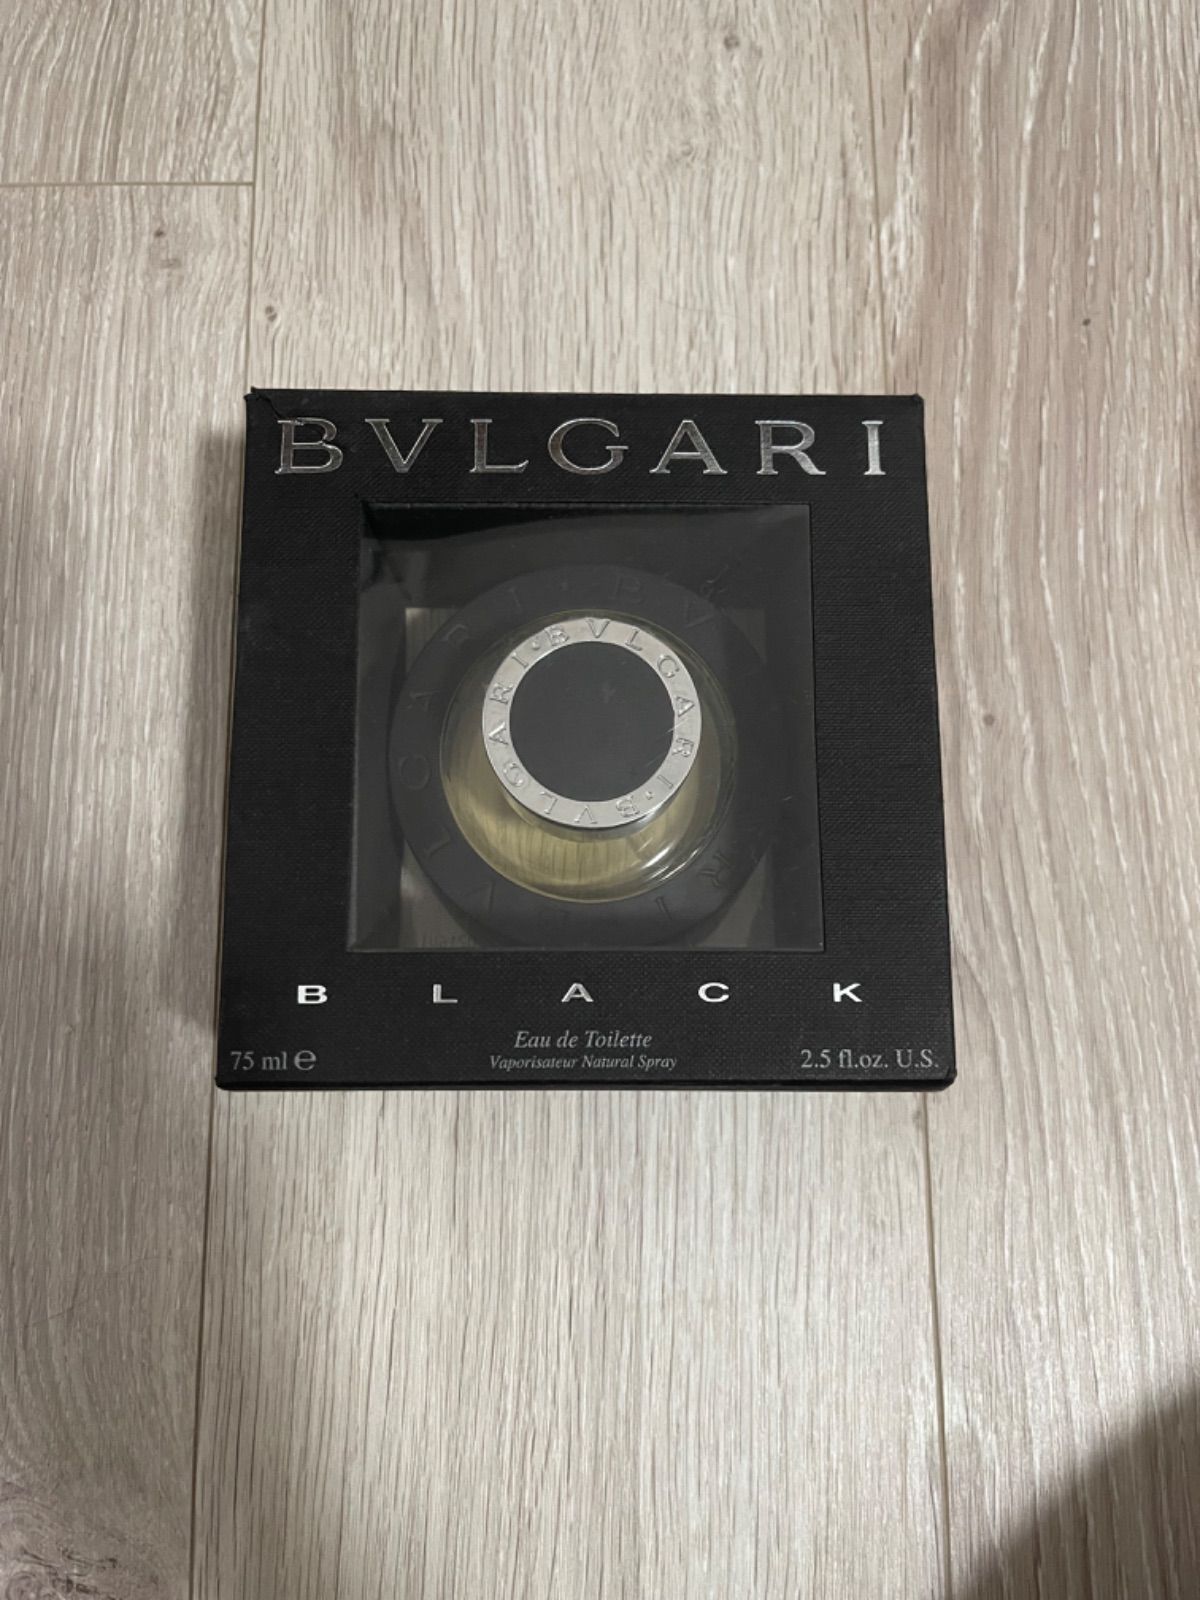 BVLGARI ブラック75ml & 40ml 2個セット - 香水